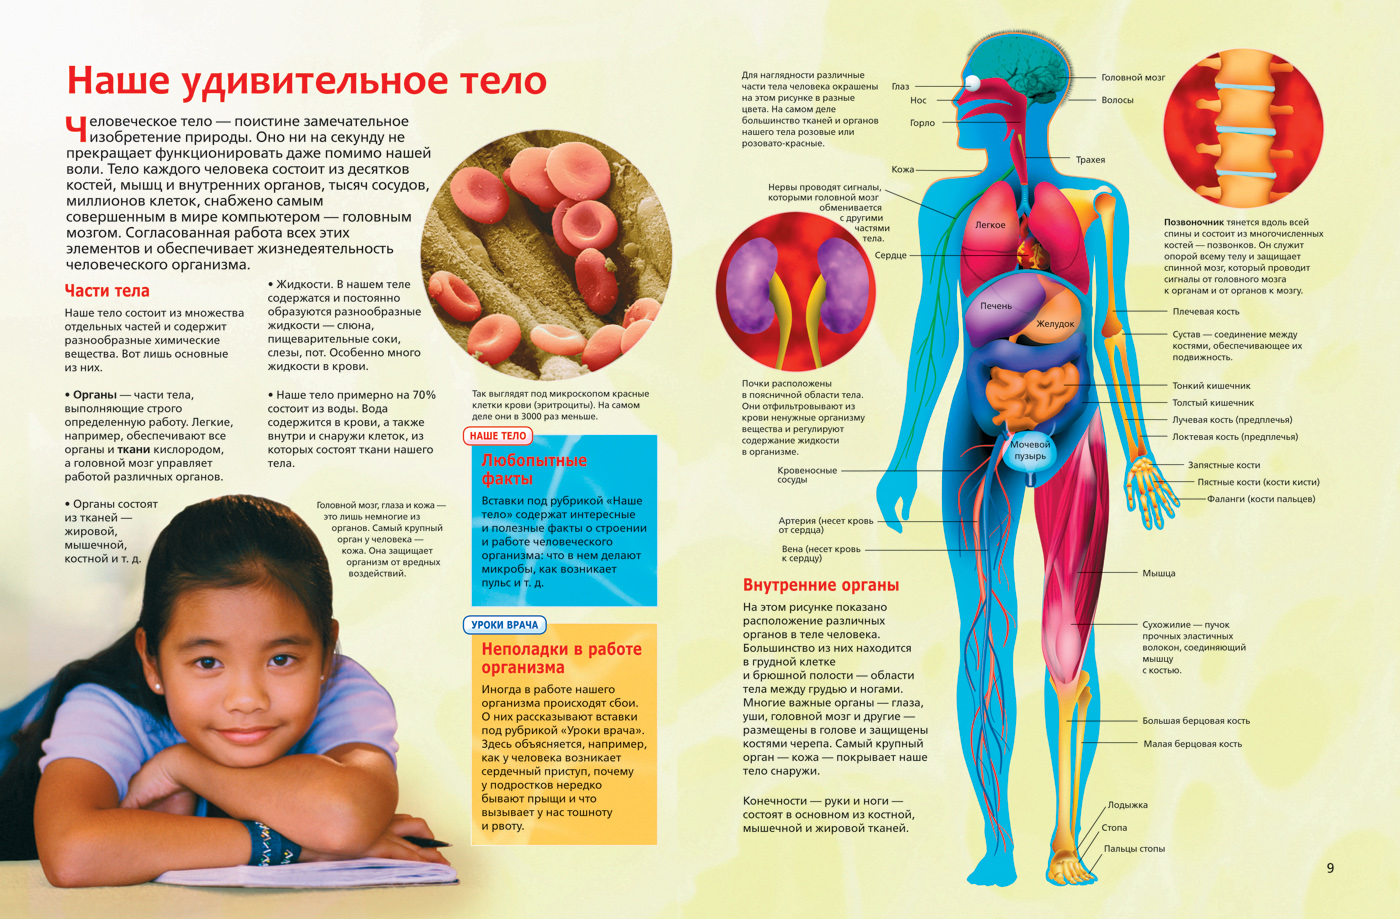 Любой новый организм. Интересные сведения о человеческом теле. Анатомия человека. Интересные факты об органах человека. Анатомия человека для детей.